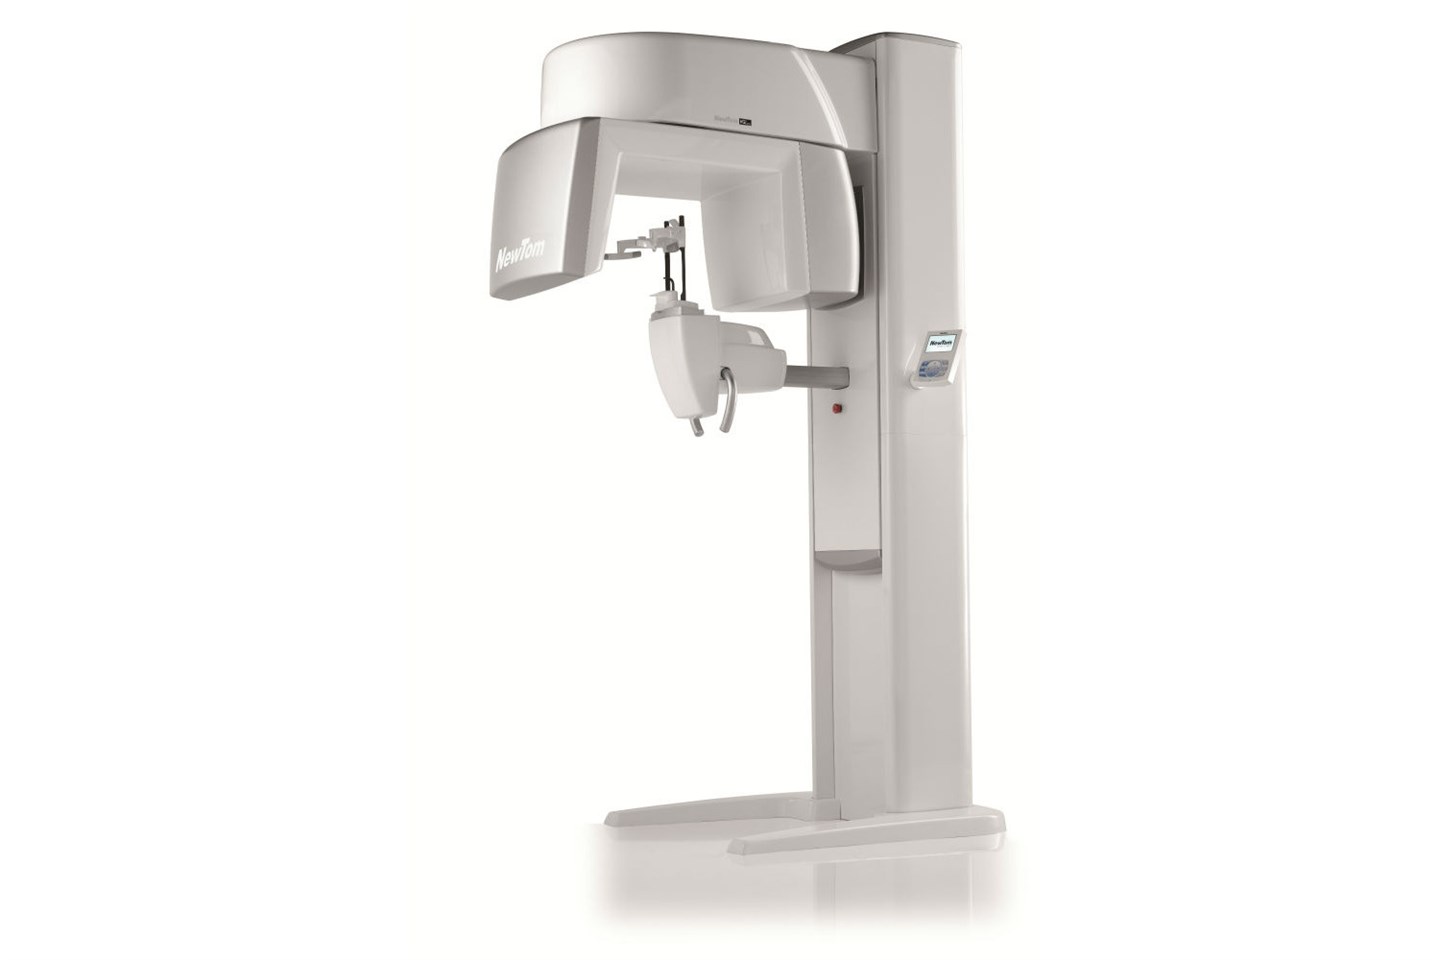 «Клиника уха, горла и носа» запускает в работу компьютерный томограф New Tom VGI Evo